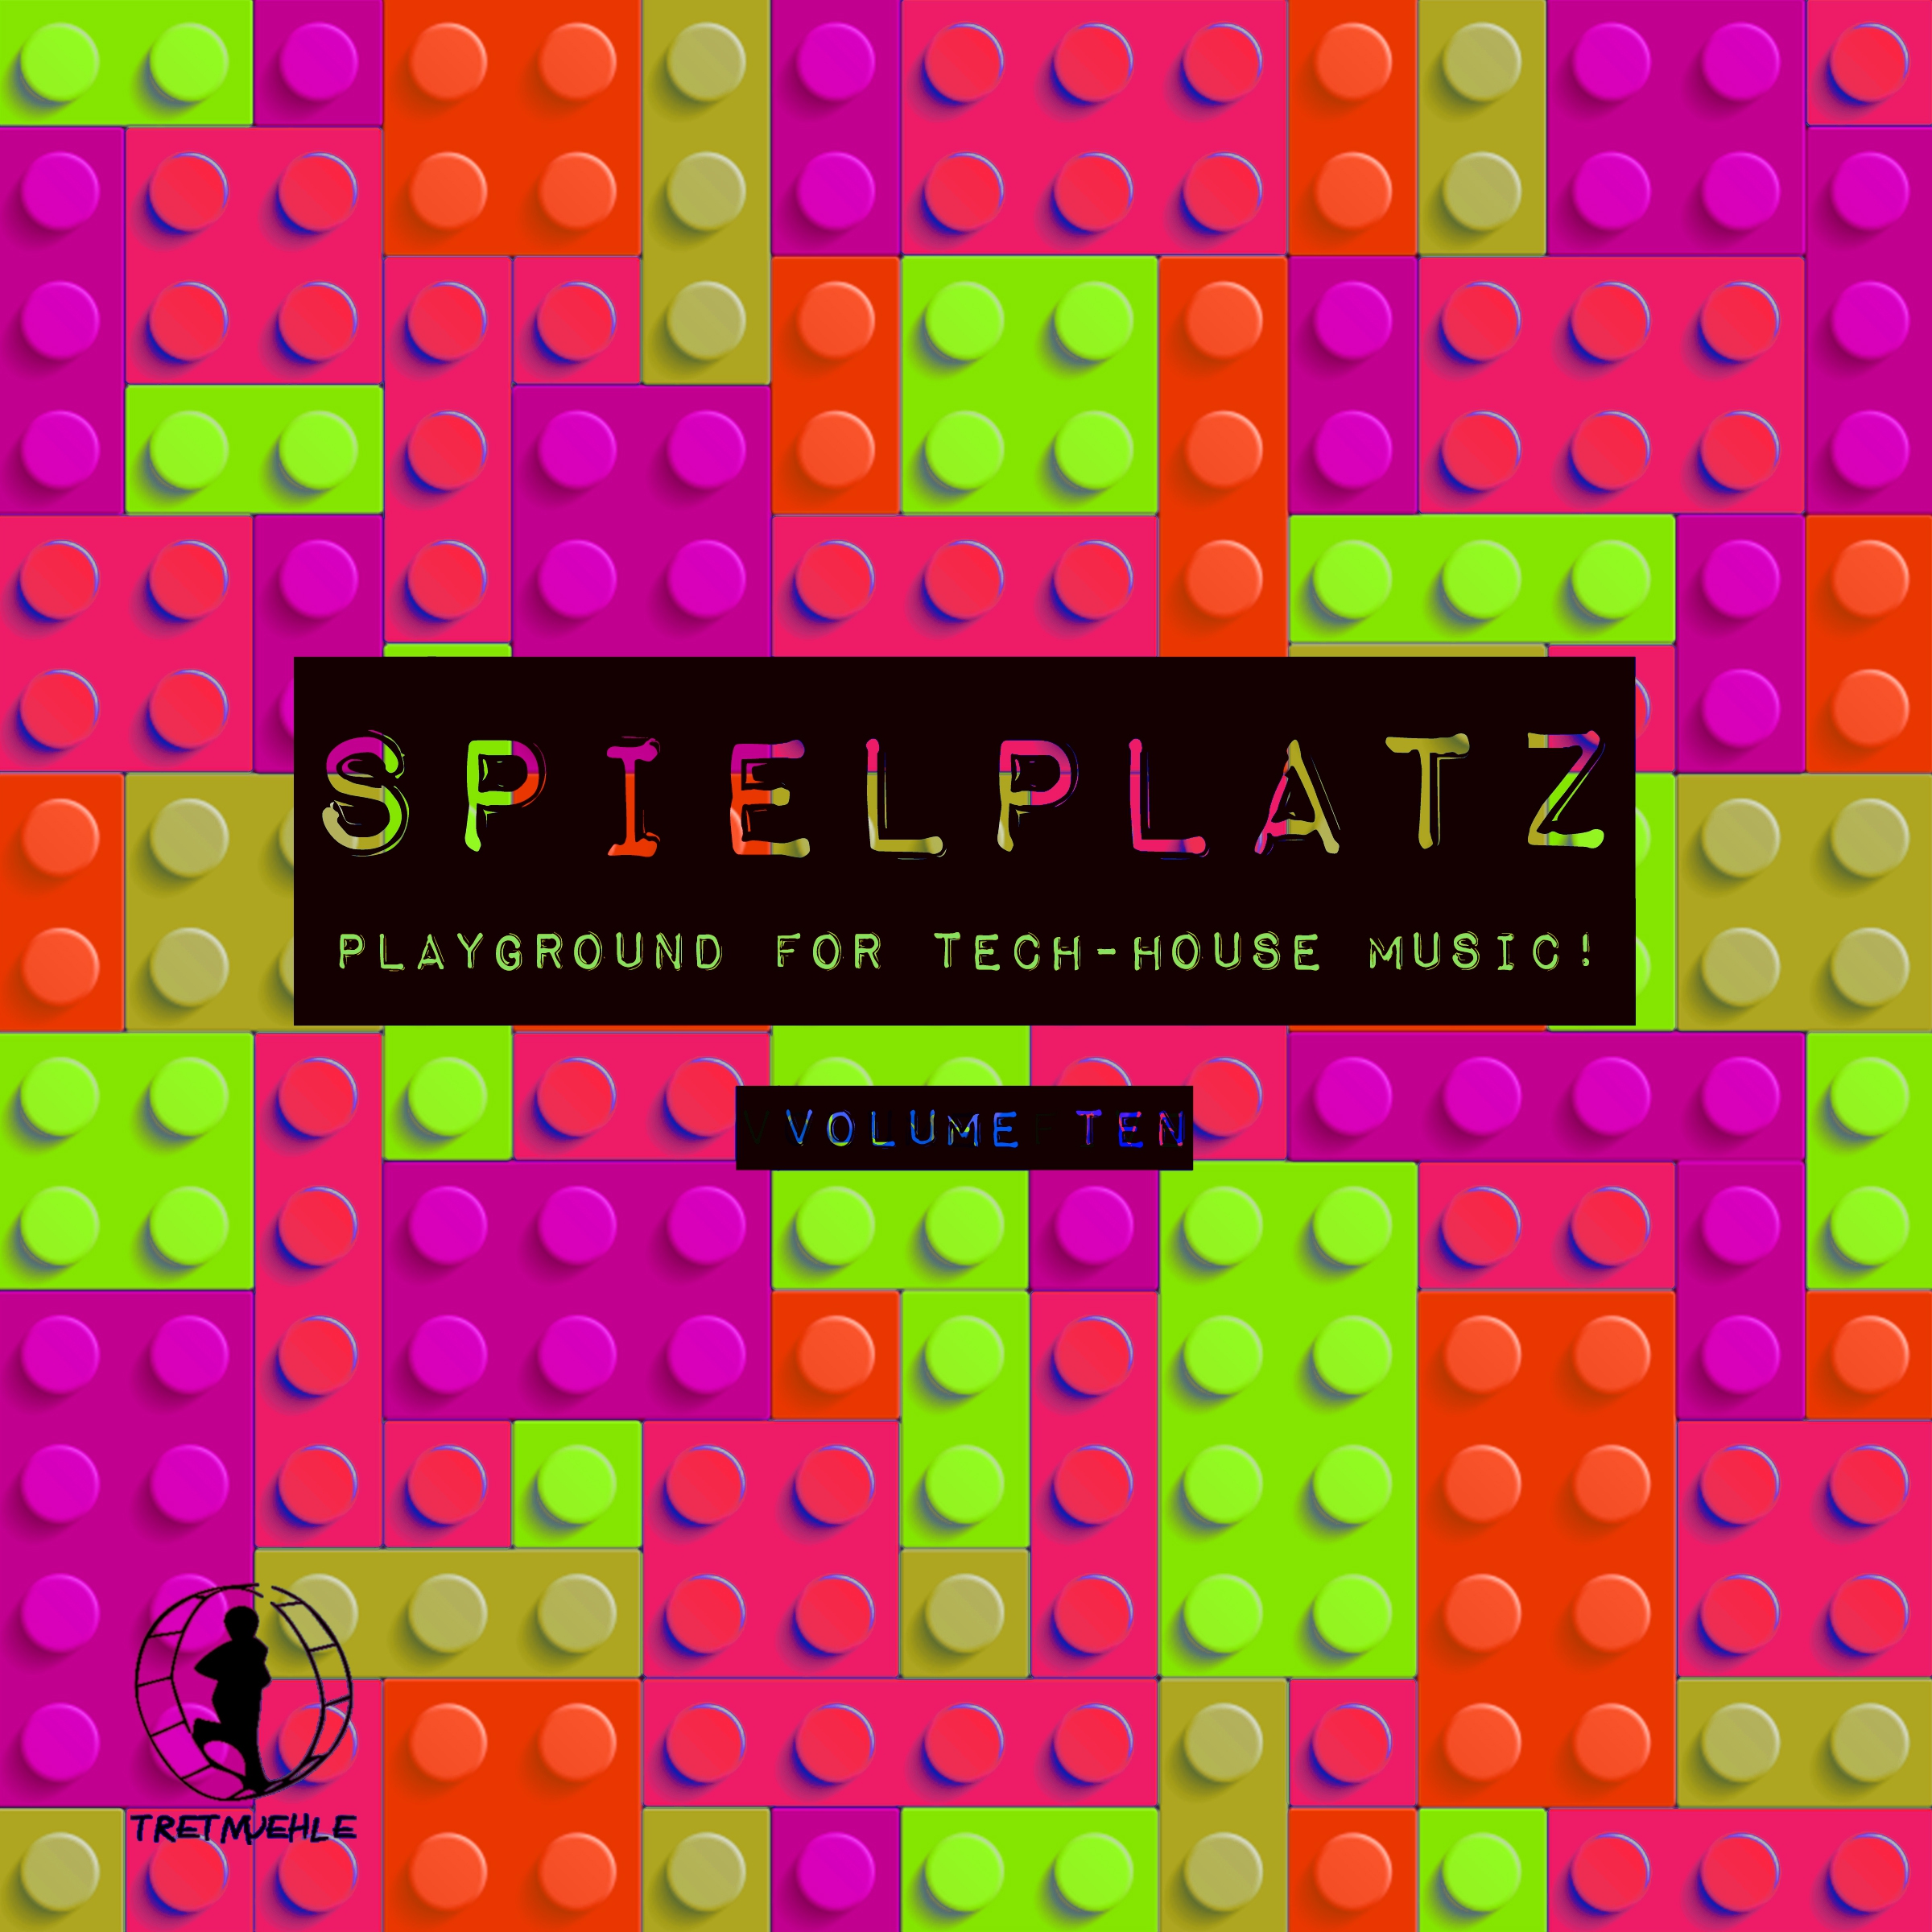 Spielplatz, Vol. 10 - Playground for Tech-House Music